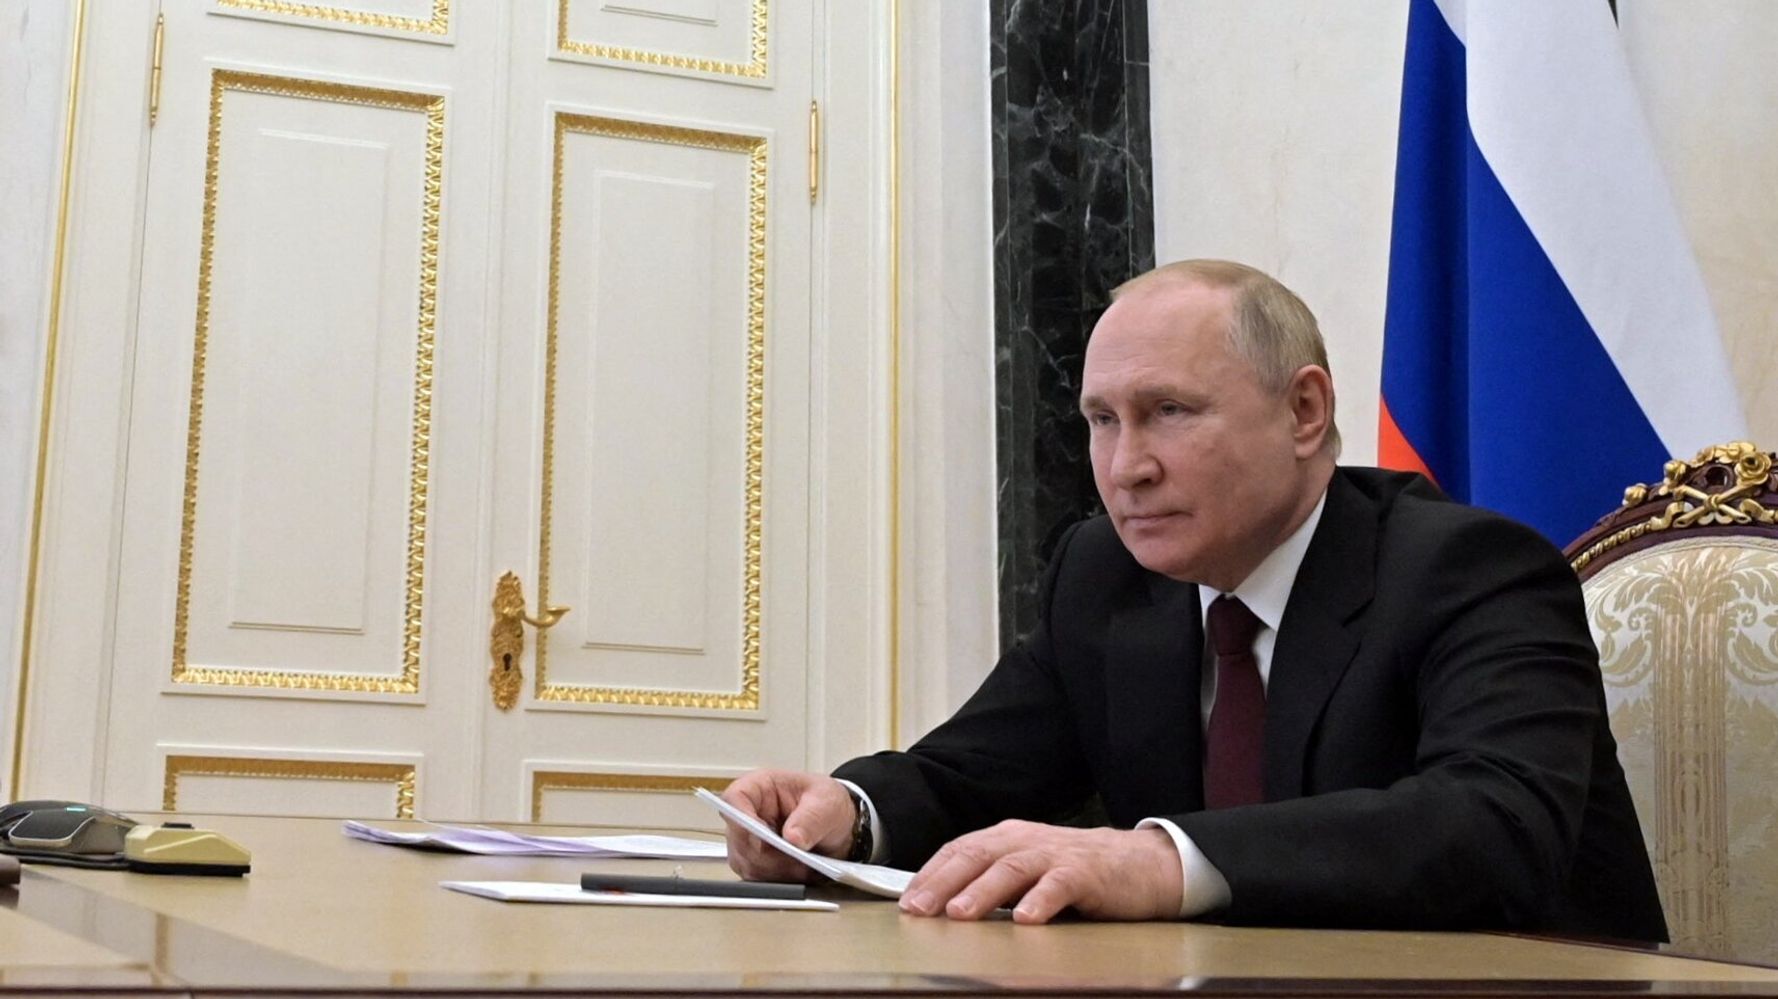 Le président russe Vladimir Poutine appelle à l’éclatement de l’Ukraine, aggravant la crise